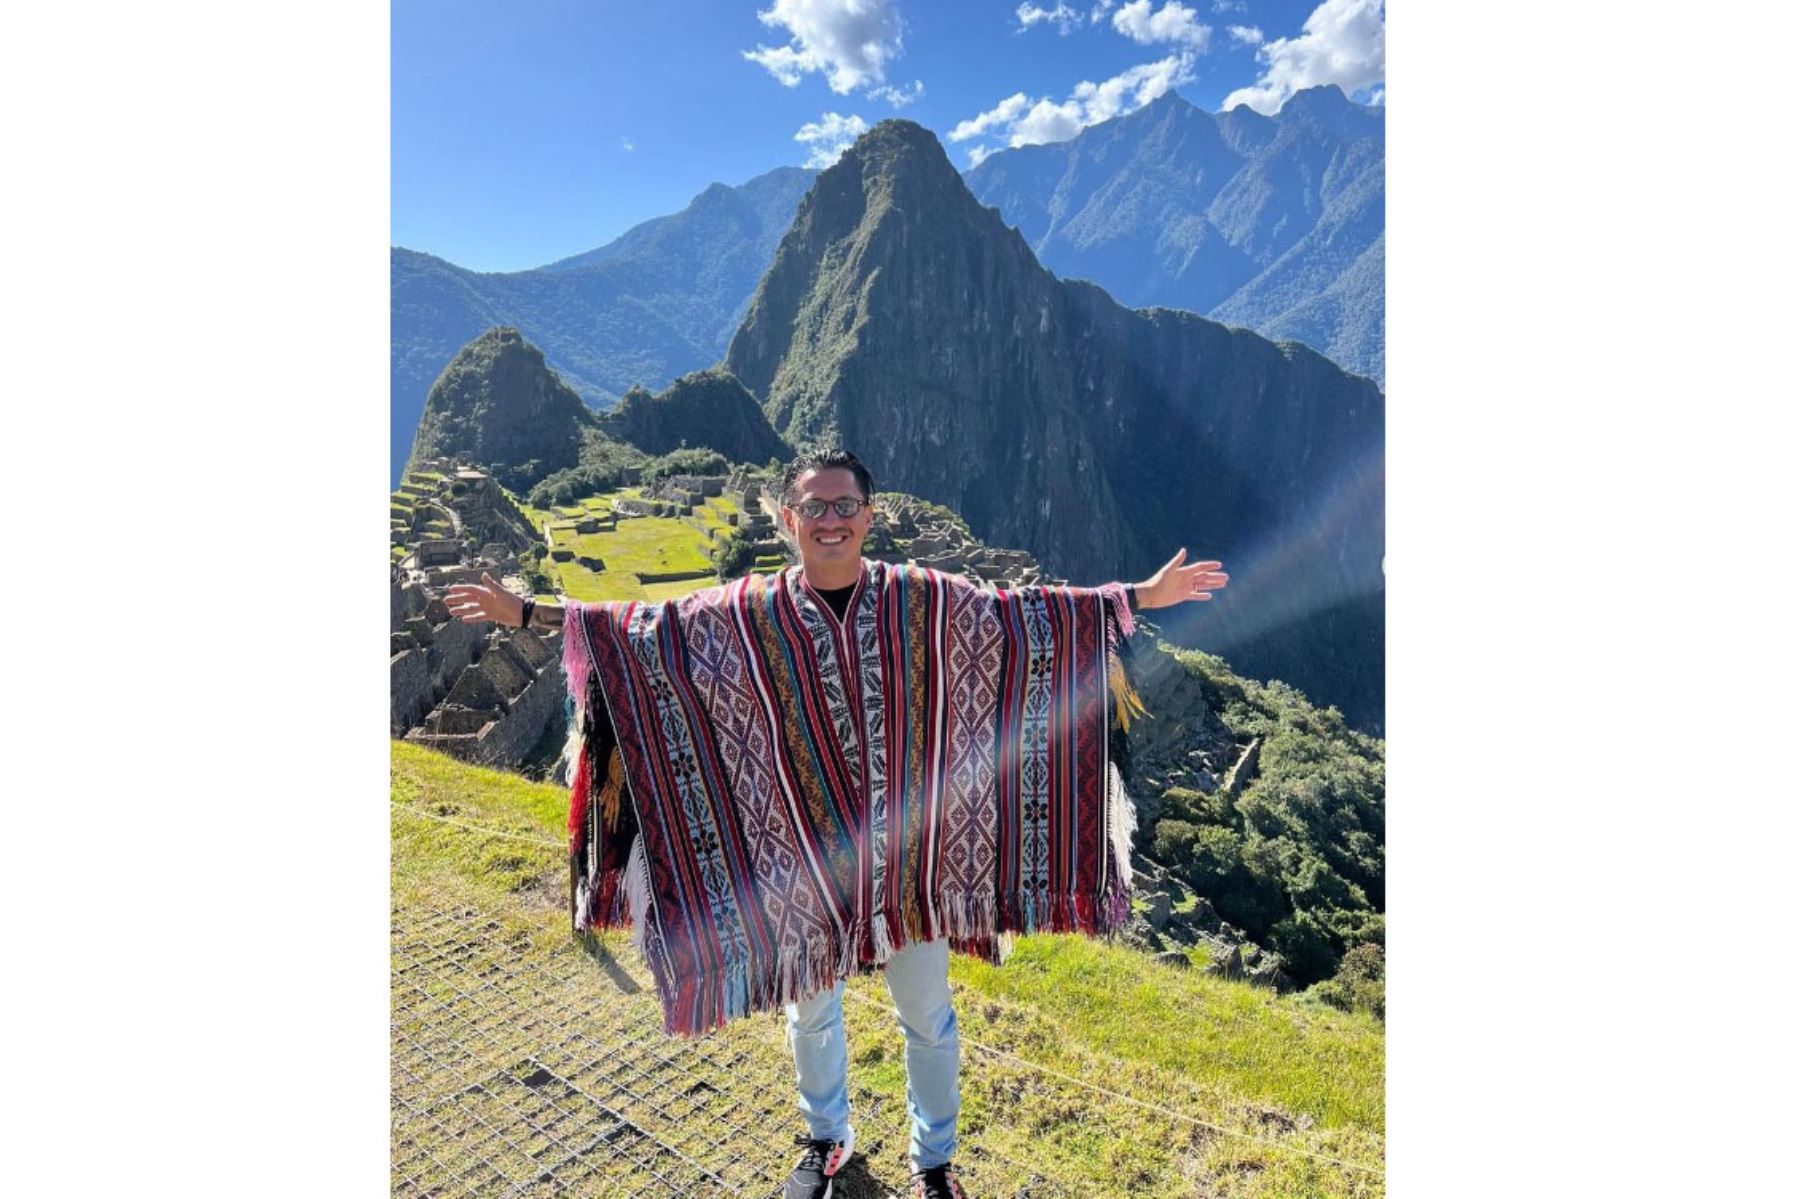 “Qué maravilla”, expresó hoy el delantero de la selección nacional de fútbol Gianluca Lapadula al llegar a Machu Picchu y quedar deslumbrado con la imponente belleza de la ciudadela inca, en su tercer día de vacaciones en Cusco. Foto: ANDINA/difusión.